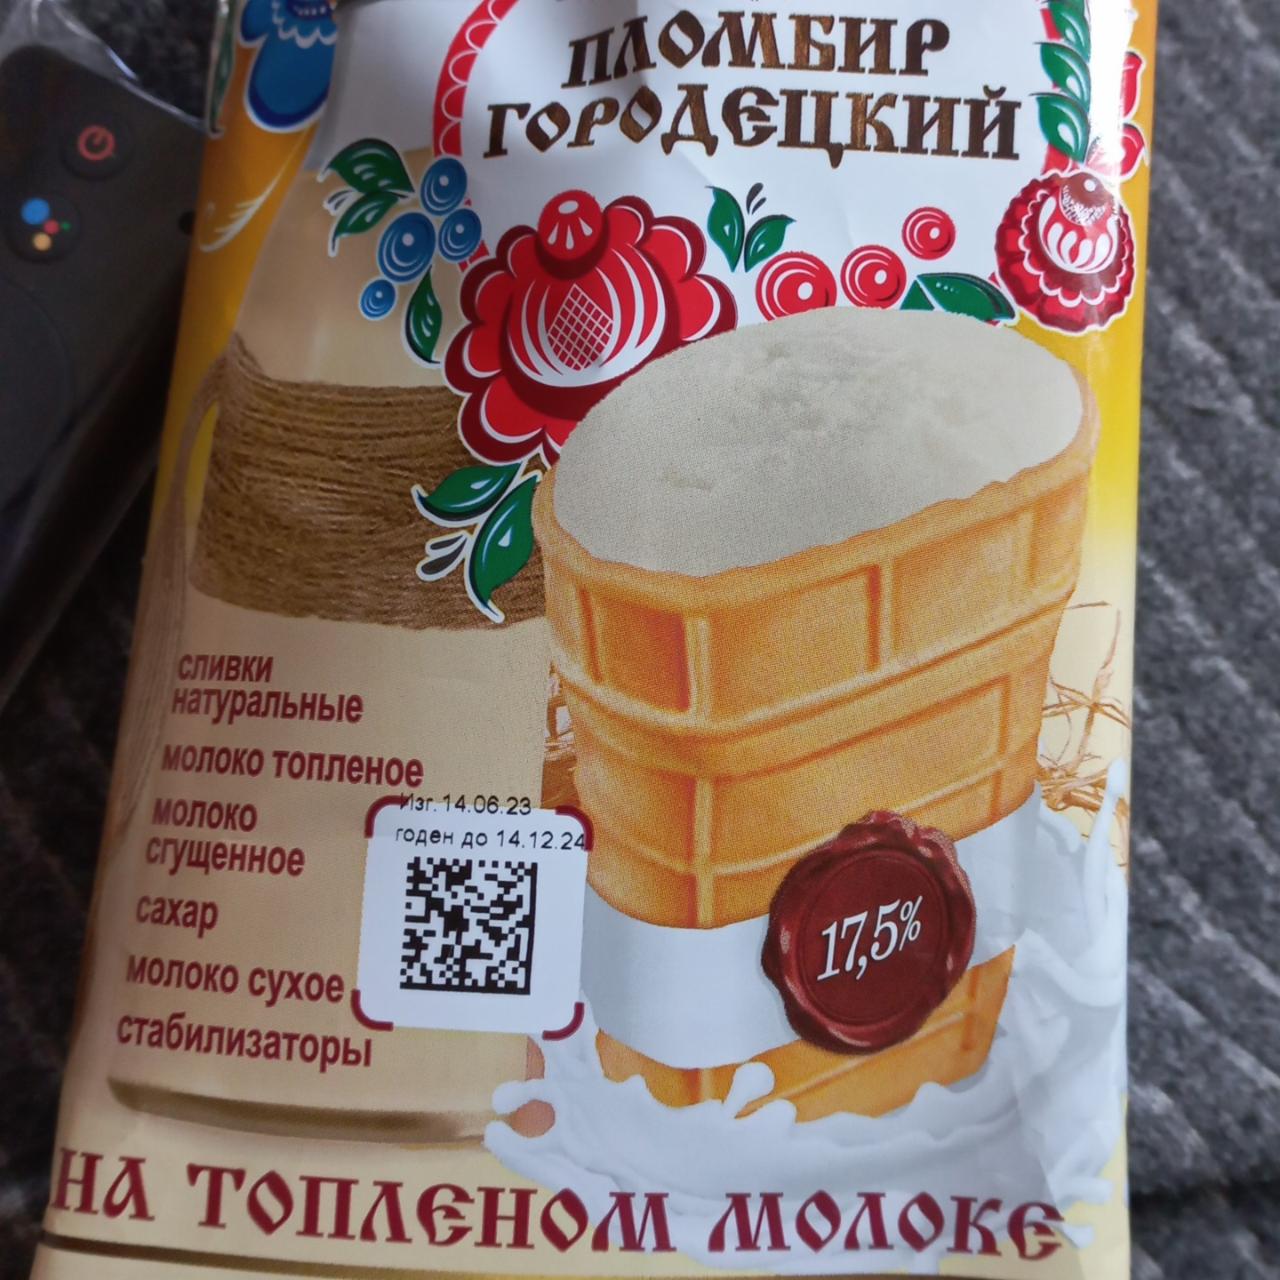 Фото - Пломбир на топлёном молоке в стаканчике Пломбир Городецкий